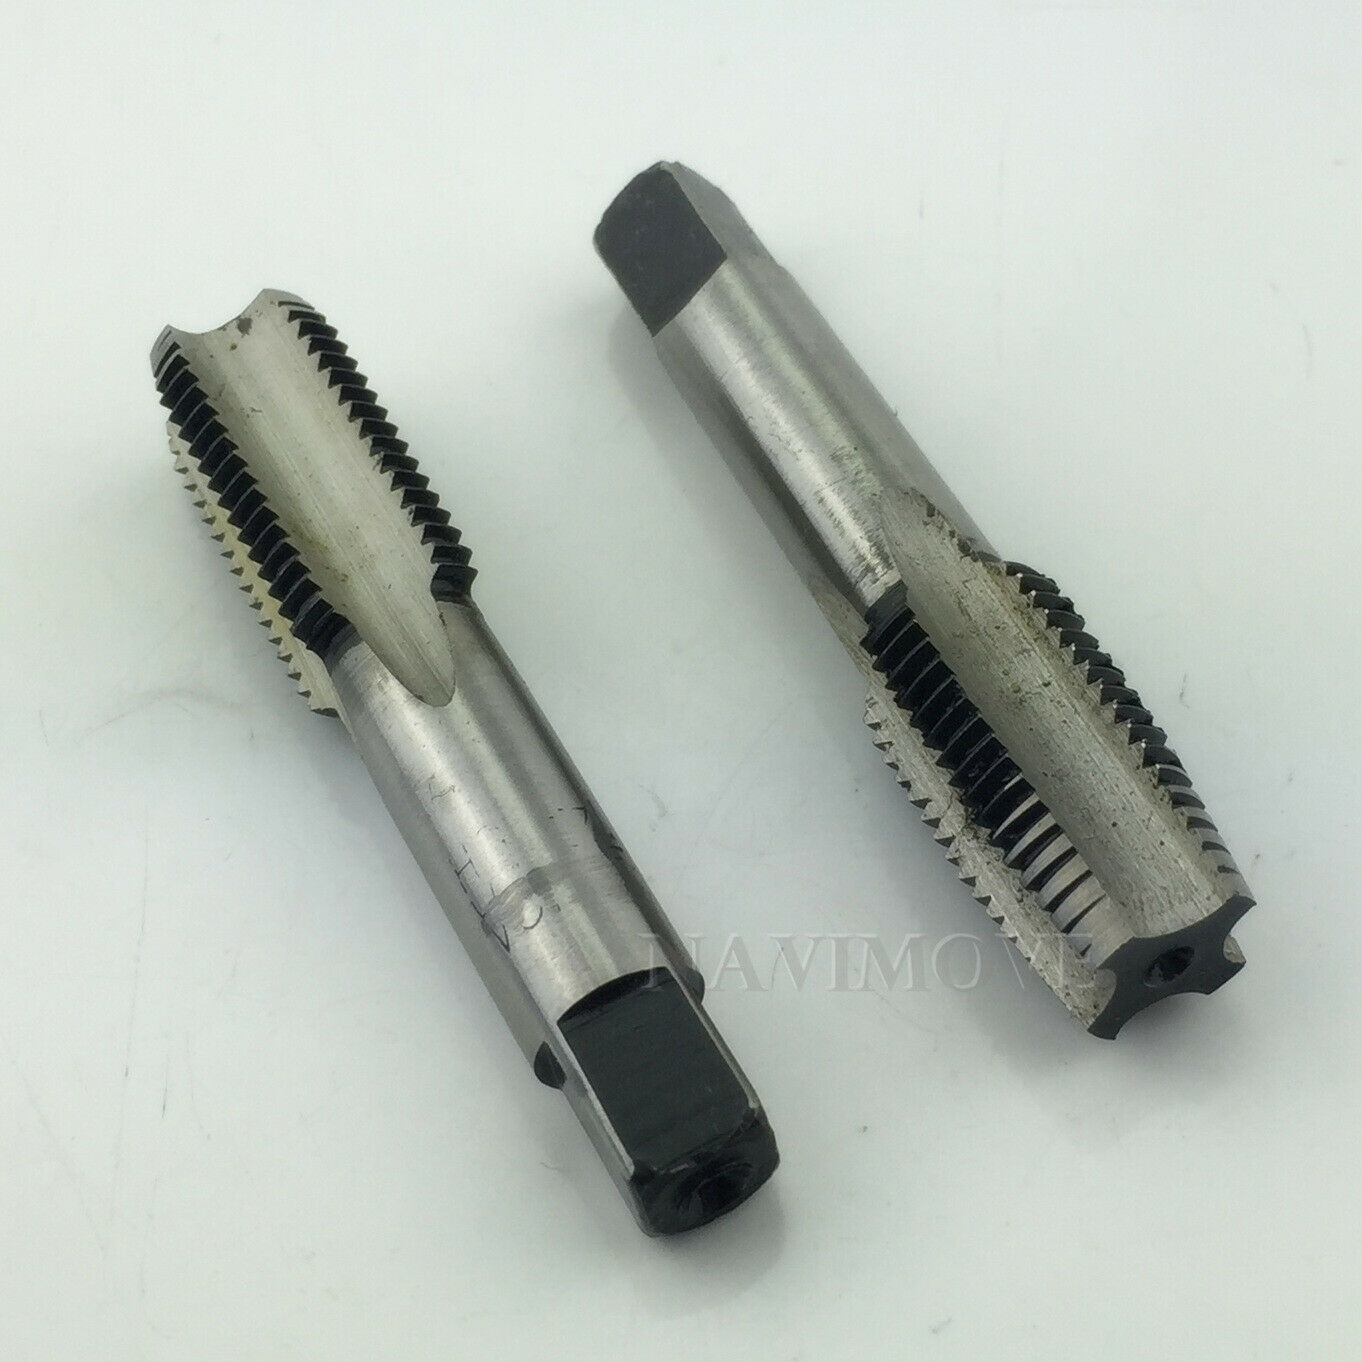 New Hss 14mmx1.5 Metric Taper & Plug Tap Right Hand Thread M14x1.5mm Pitch Usa